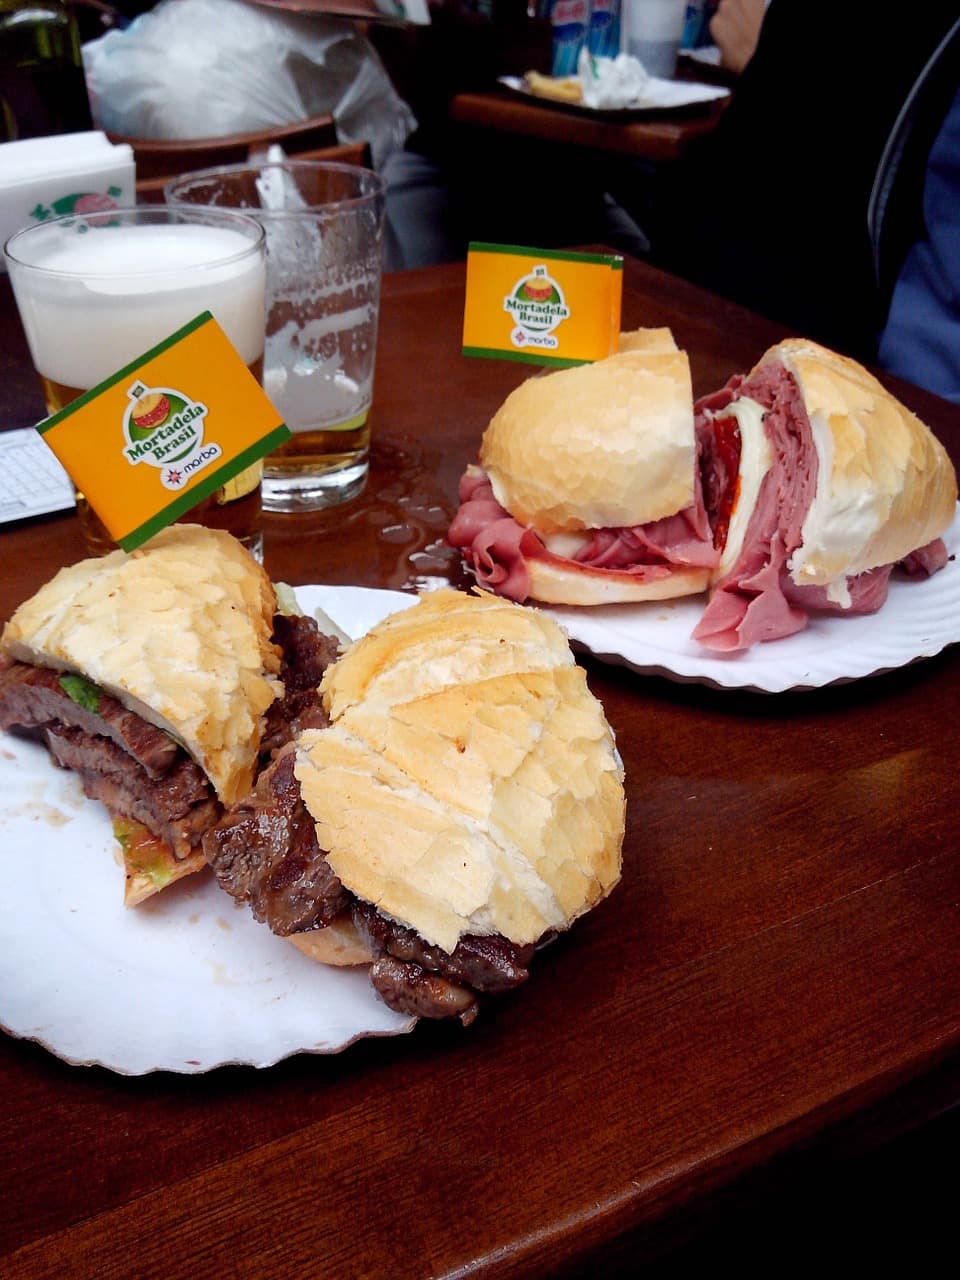 O Mercadão de São Paulo é um local tradicional para compras e principalmente para provar seu famoso sanduíche de mortadela